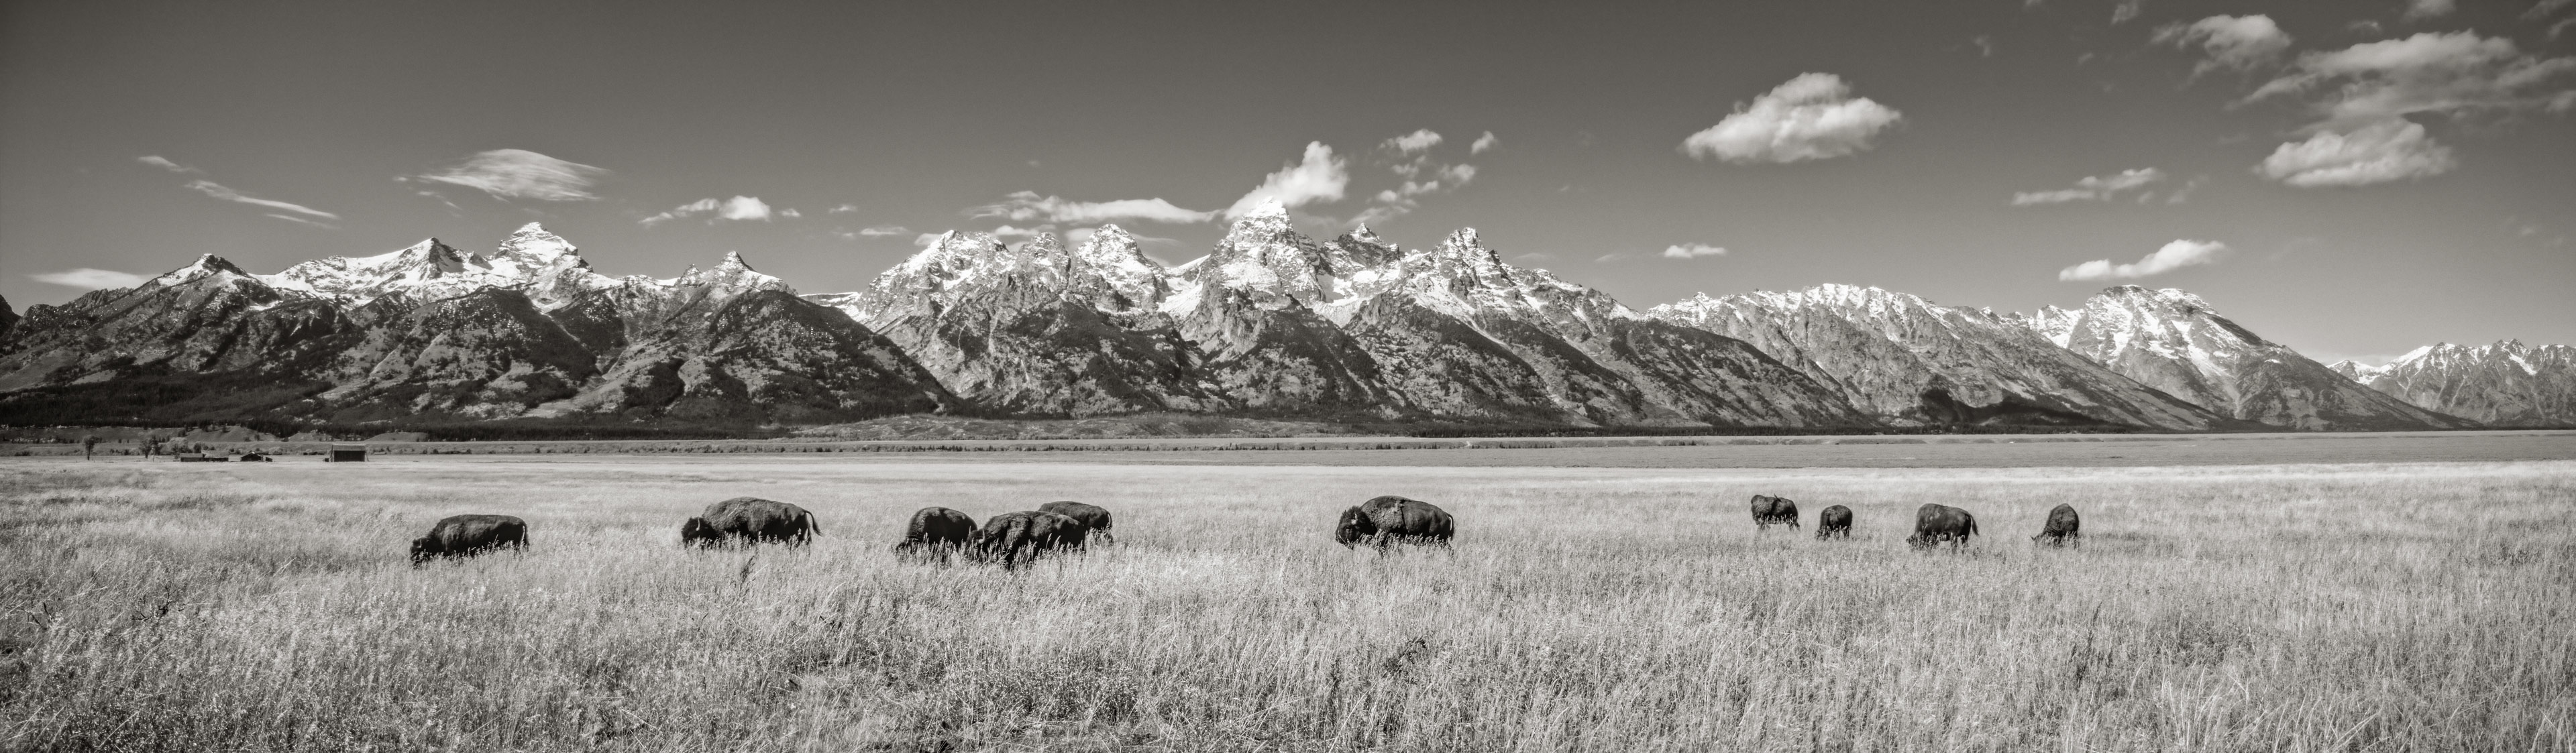 Bison,  Grand Teton National Park, Wyoming, USA